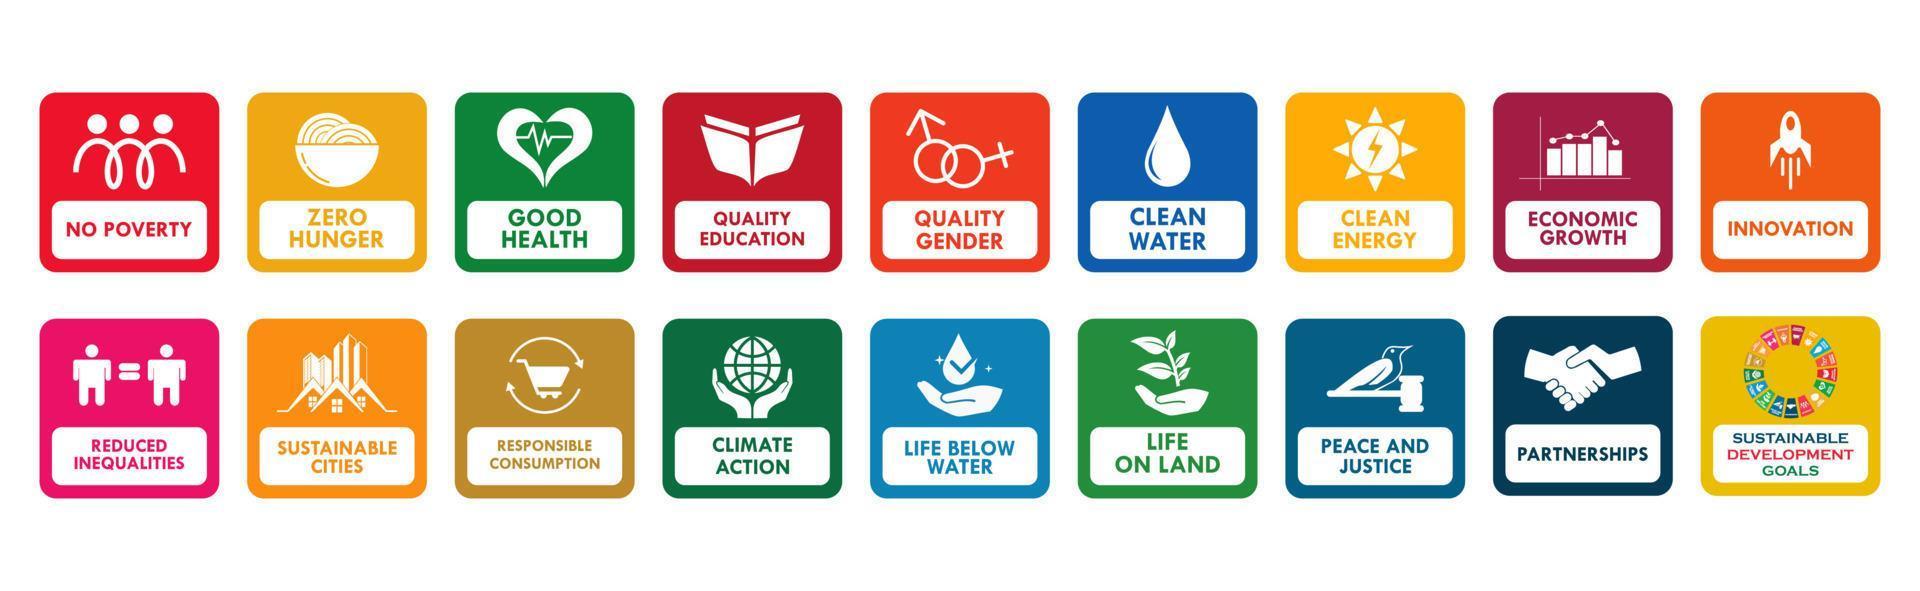 ilustração de modelo de logotipo de objetivos de desenvolvimento sustentável vetor